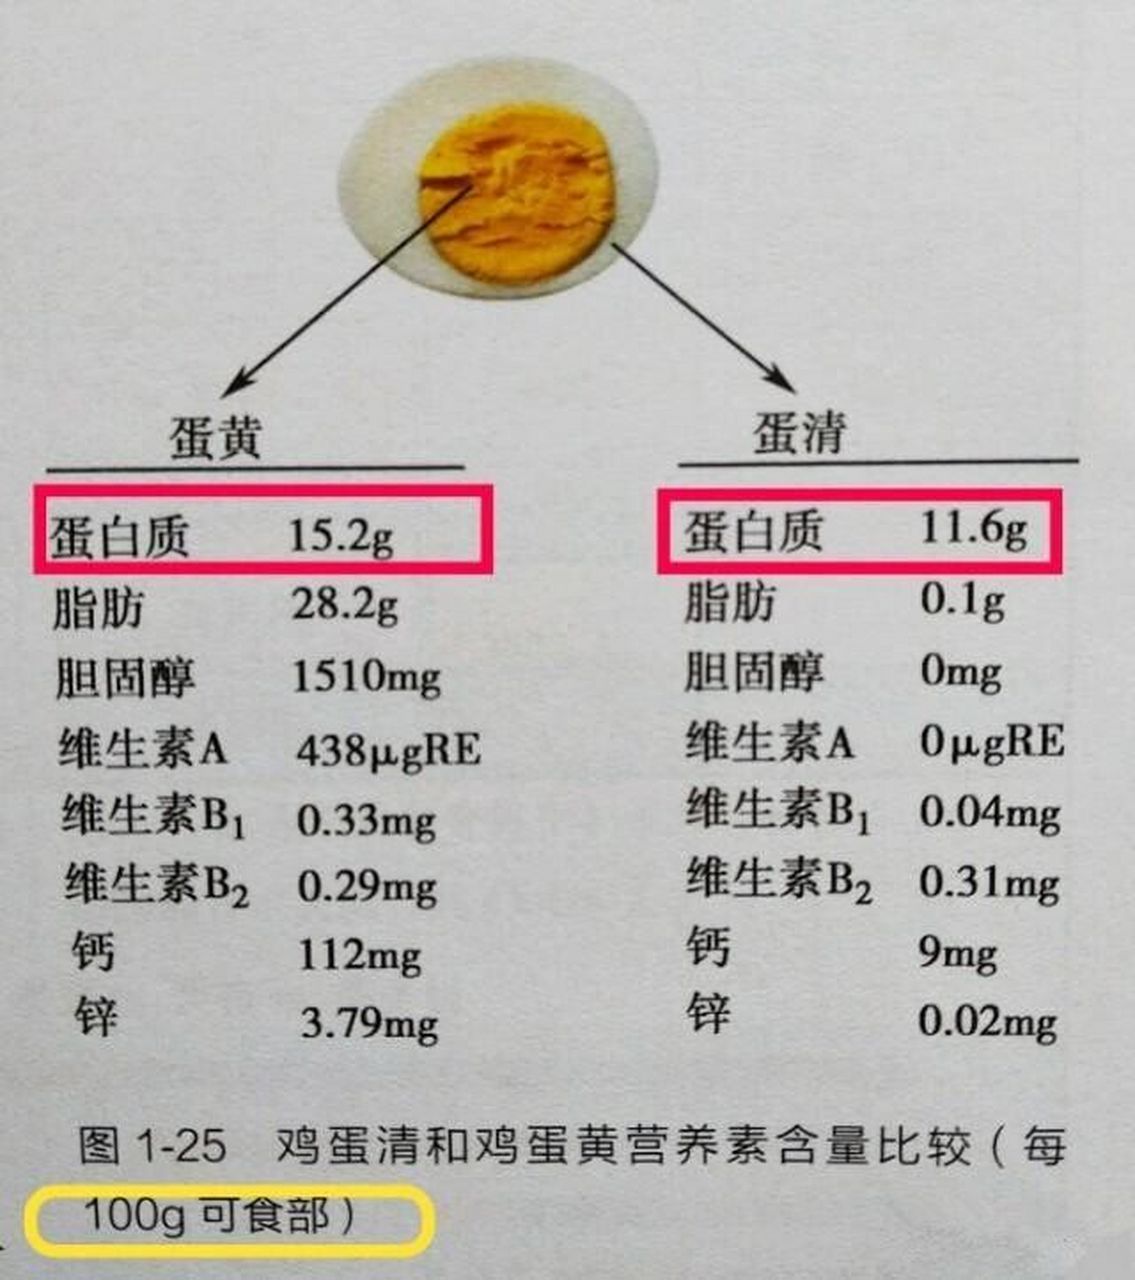 5g 鸡蛋黄的蛋白质含量为15